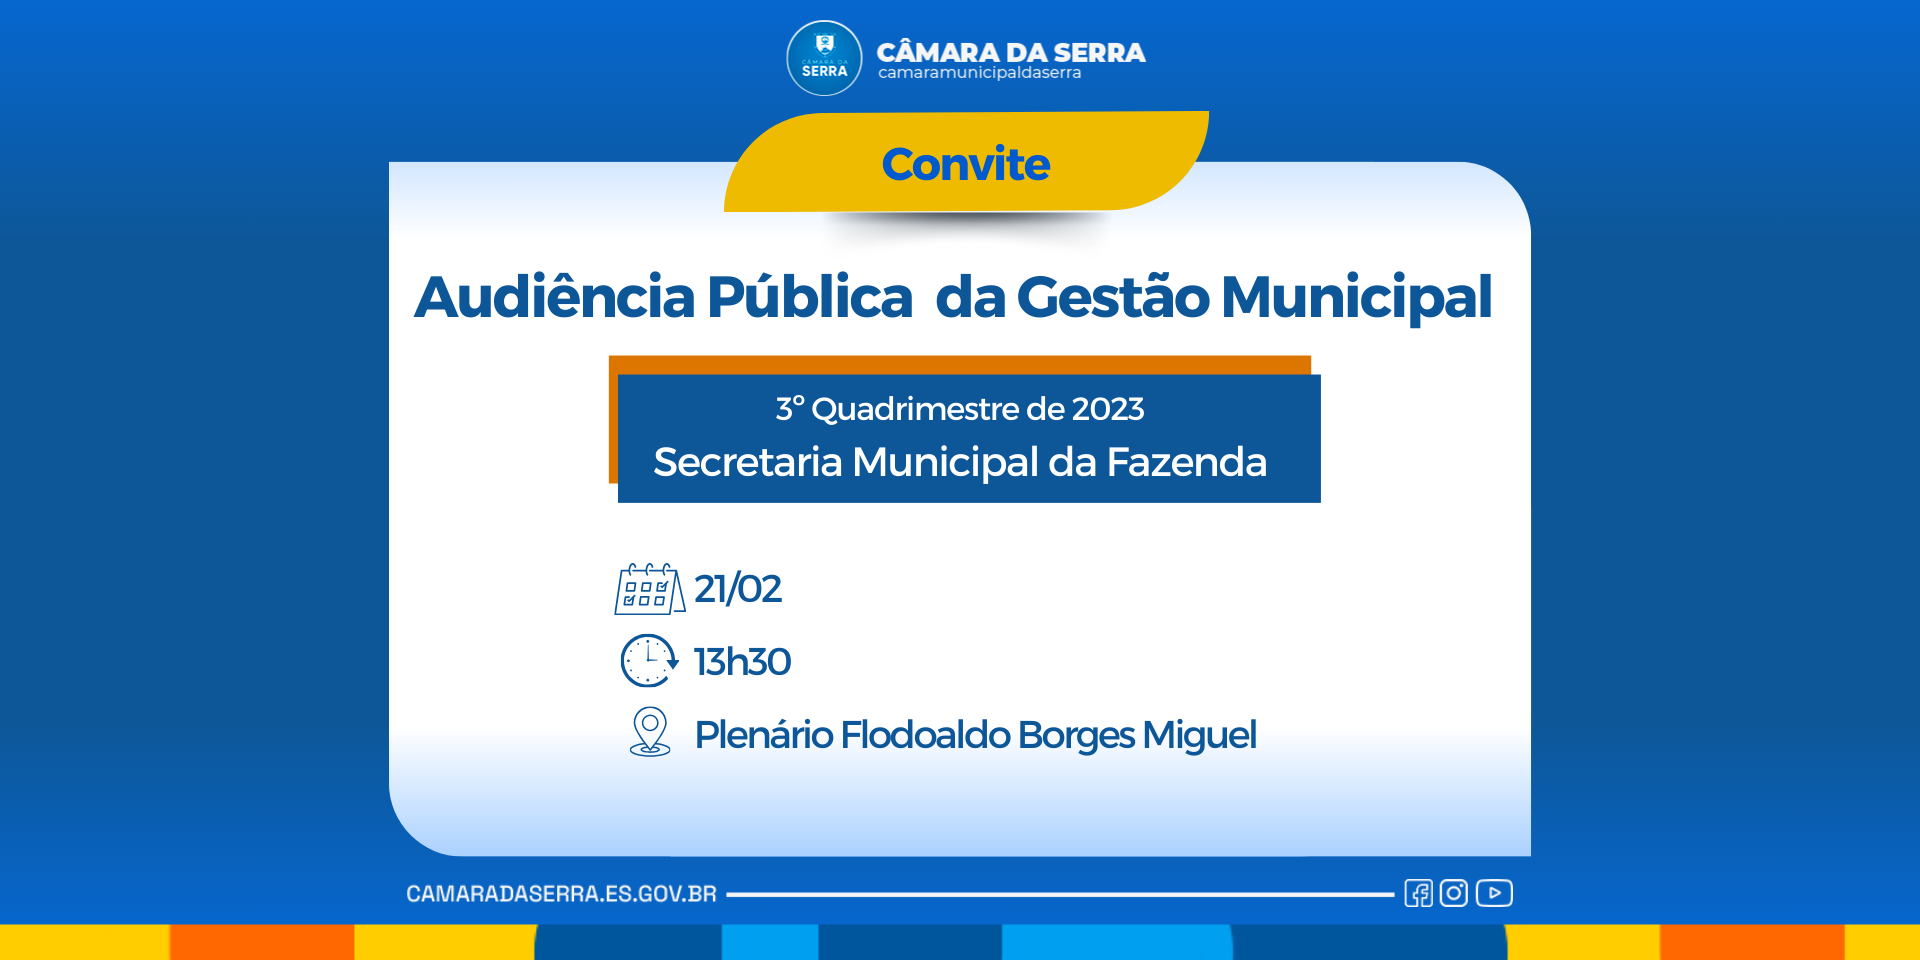 NOTÍCIA: Convite à população serrana: Audiência Pública da Gestão Municipal 3º Quadrimestre de 2023